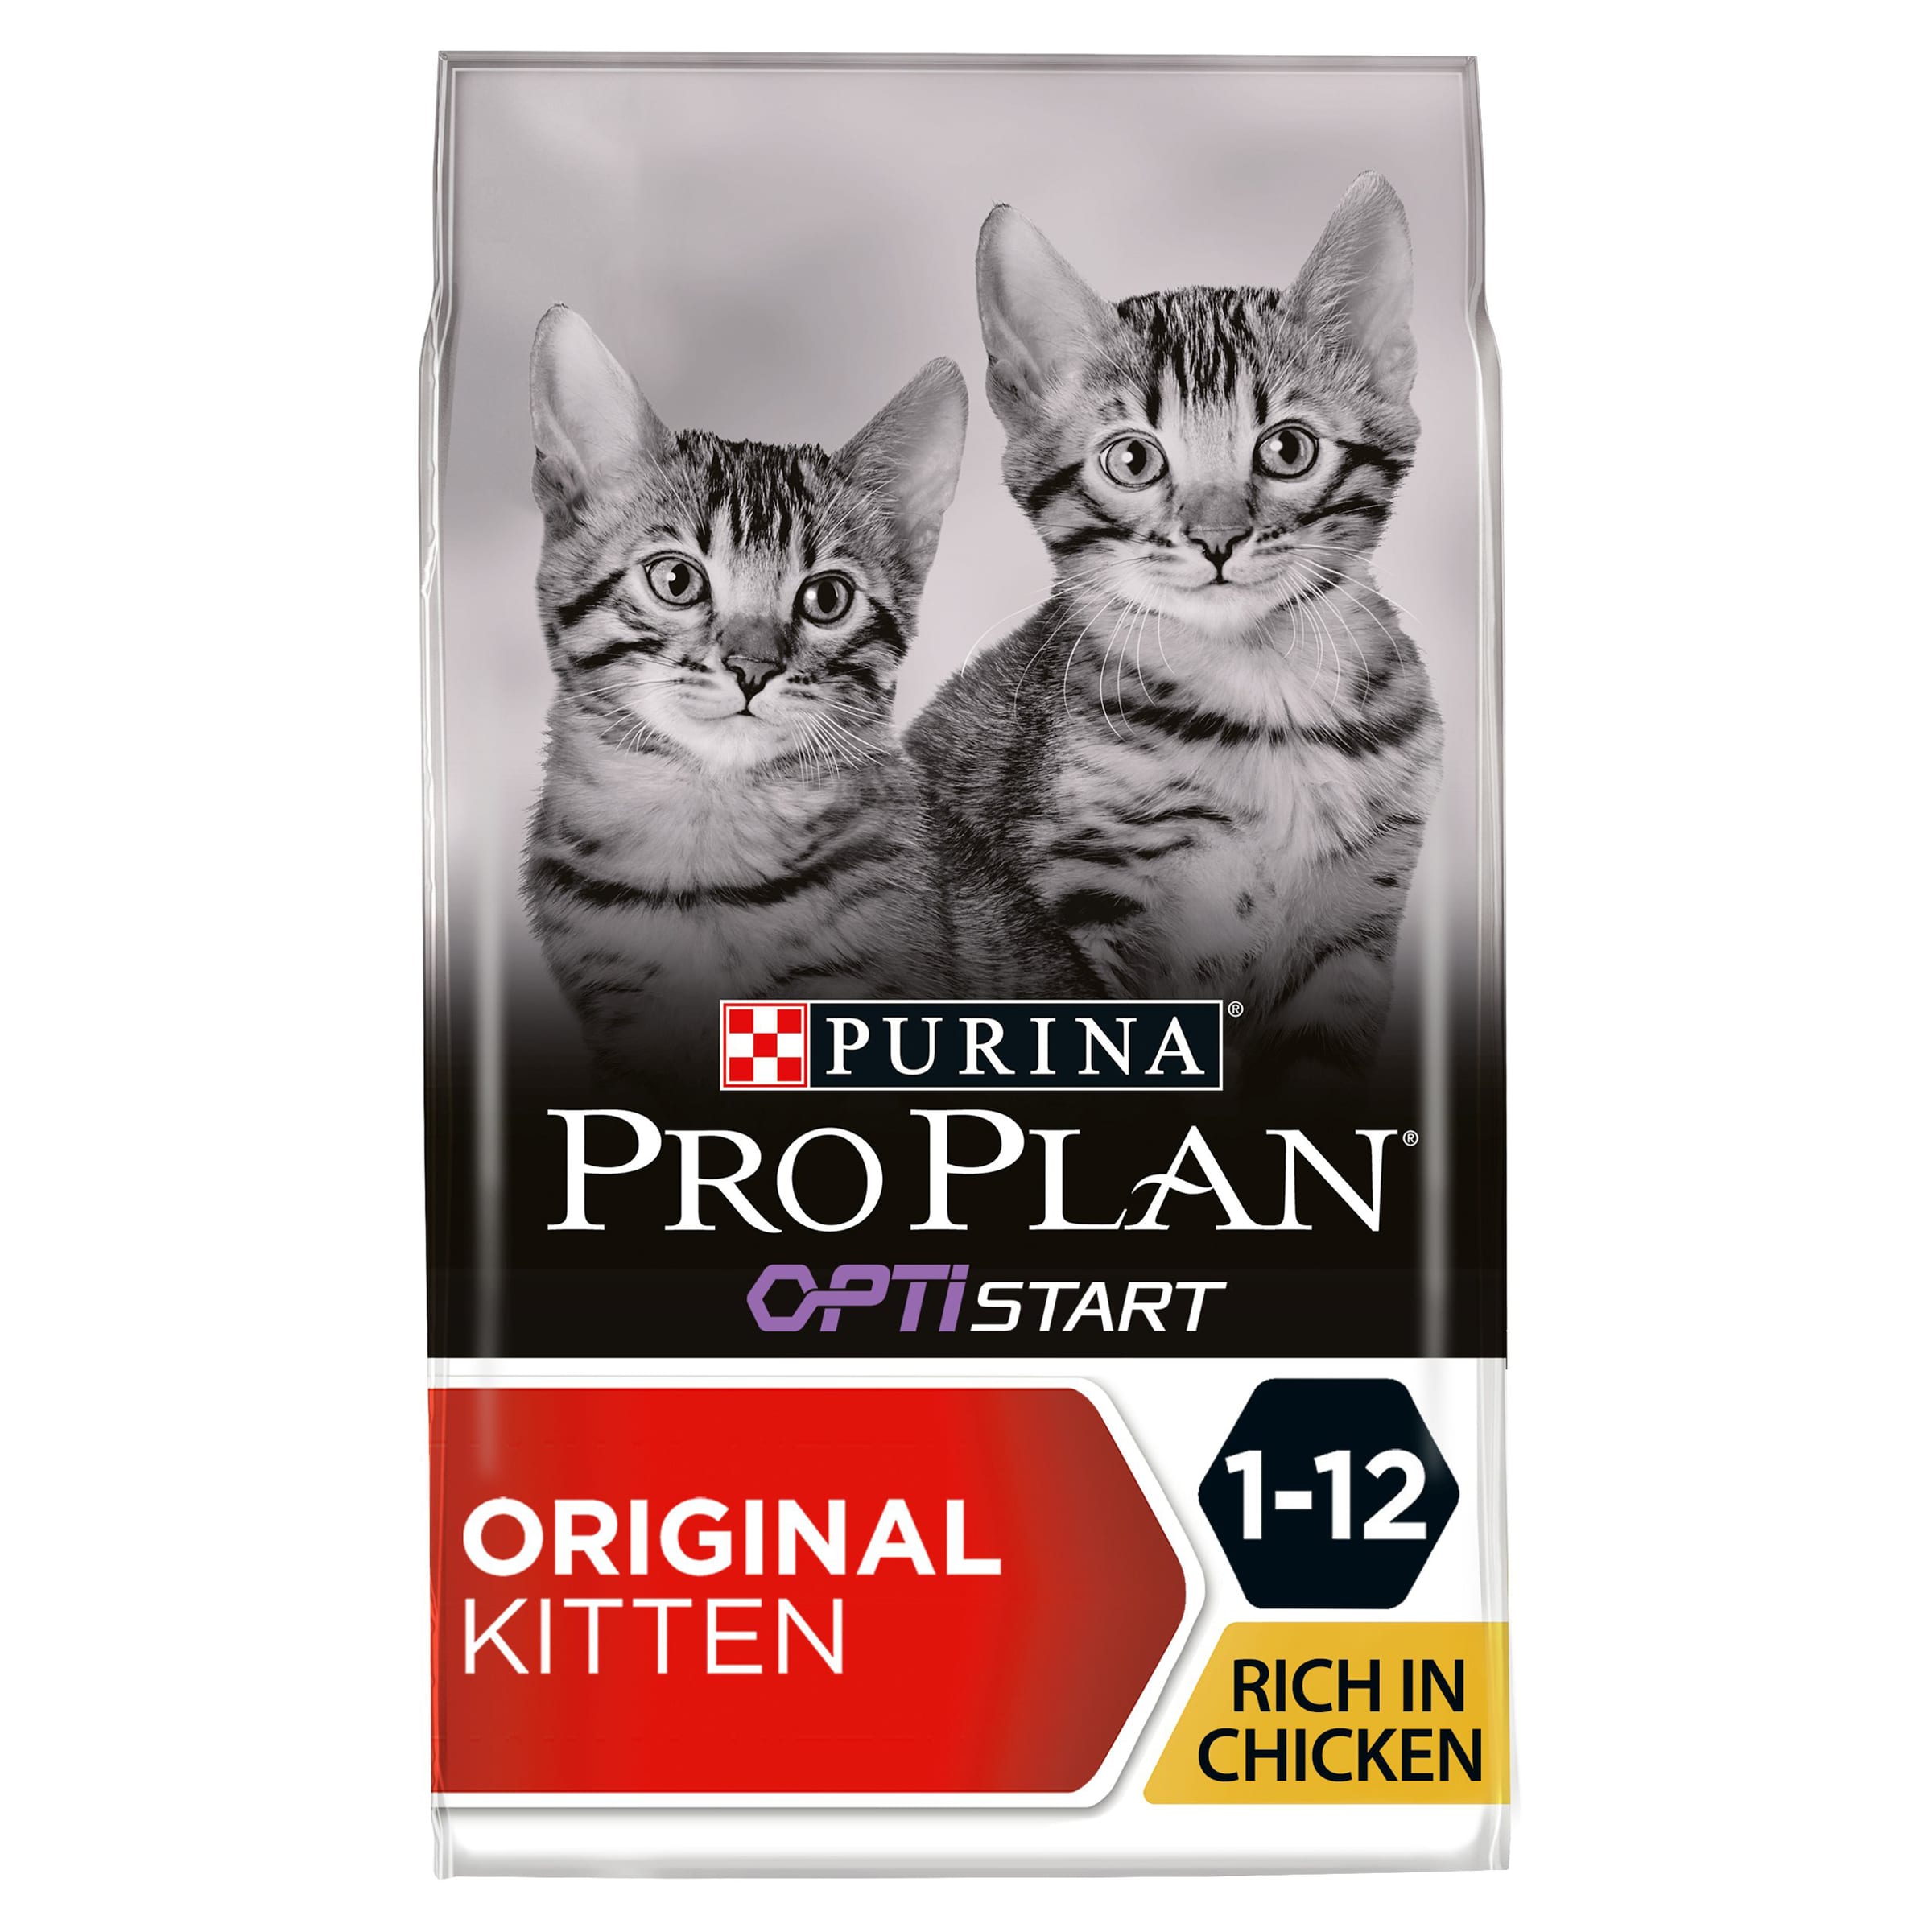 pro plan kitten food